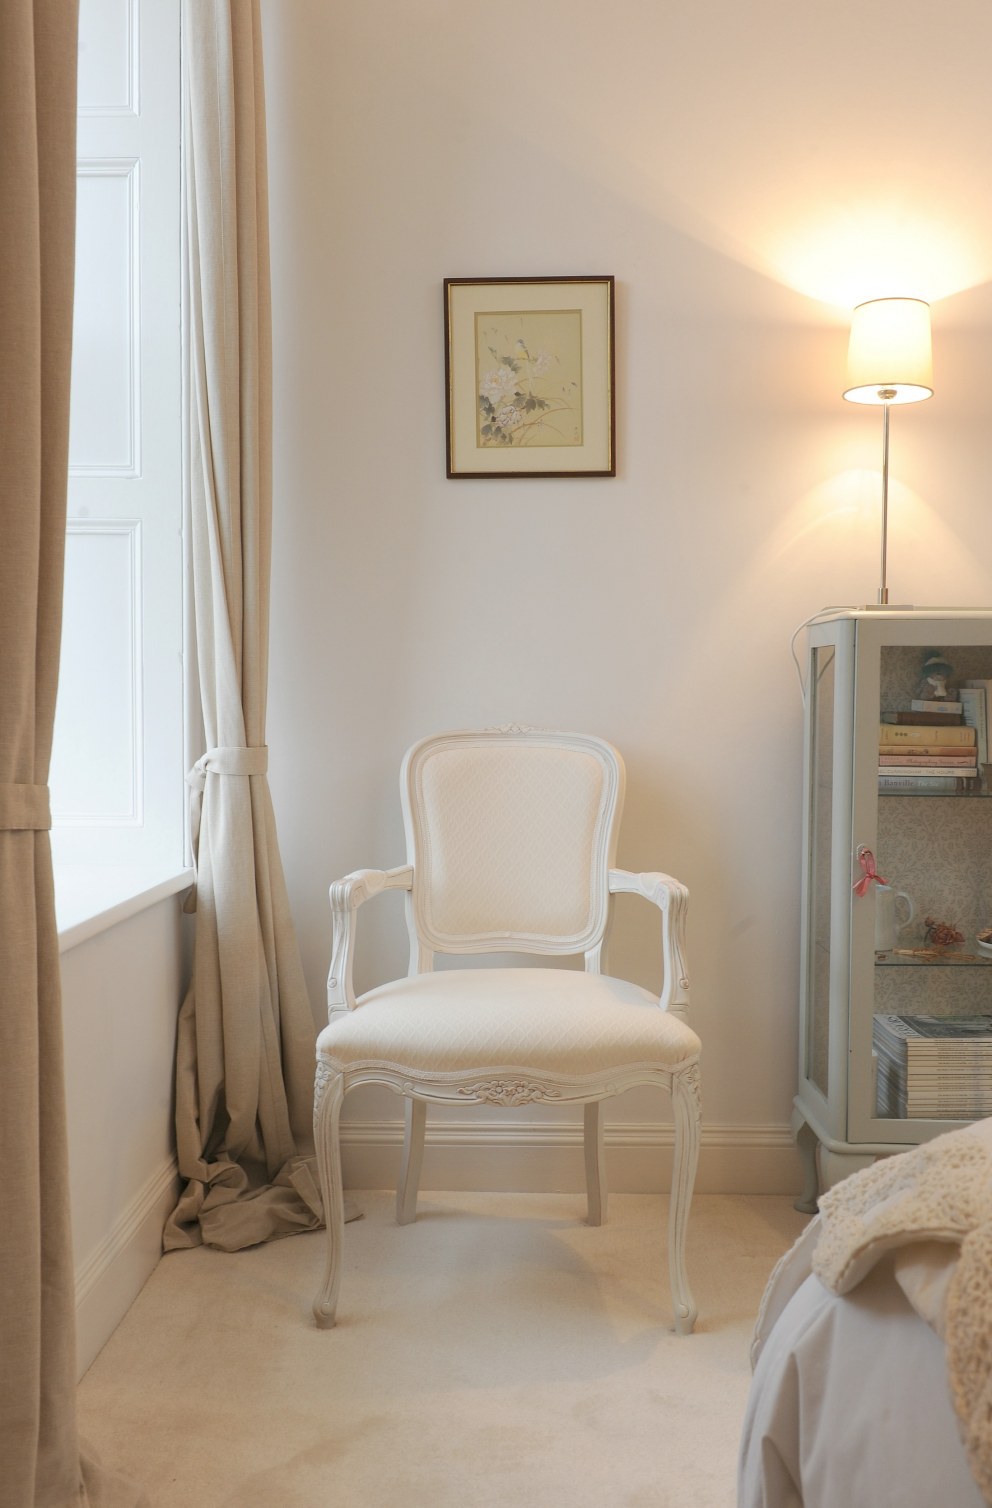 Edinburgh period apartment | Guest bedroom detail | Interior Designers